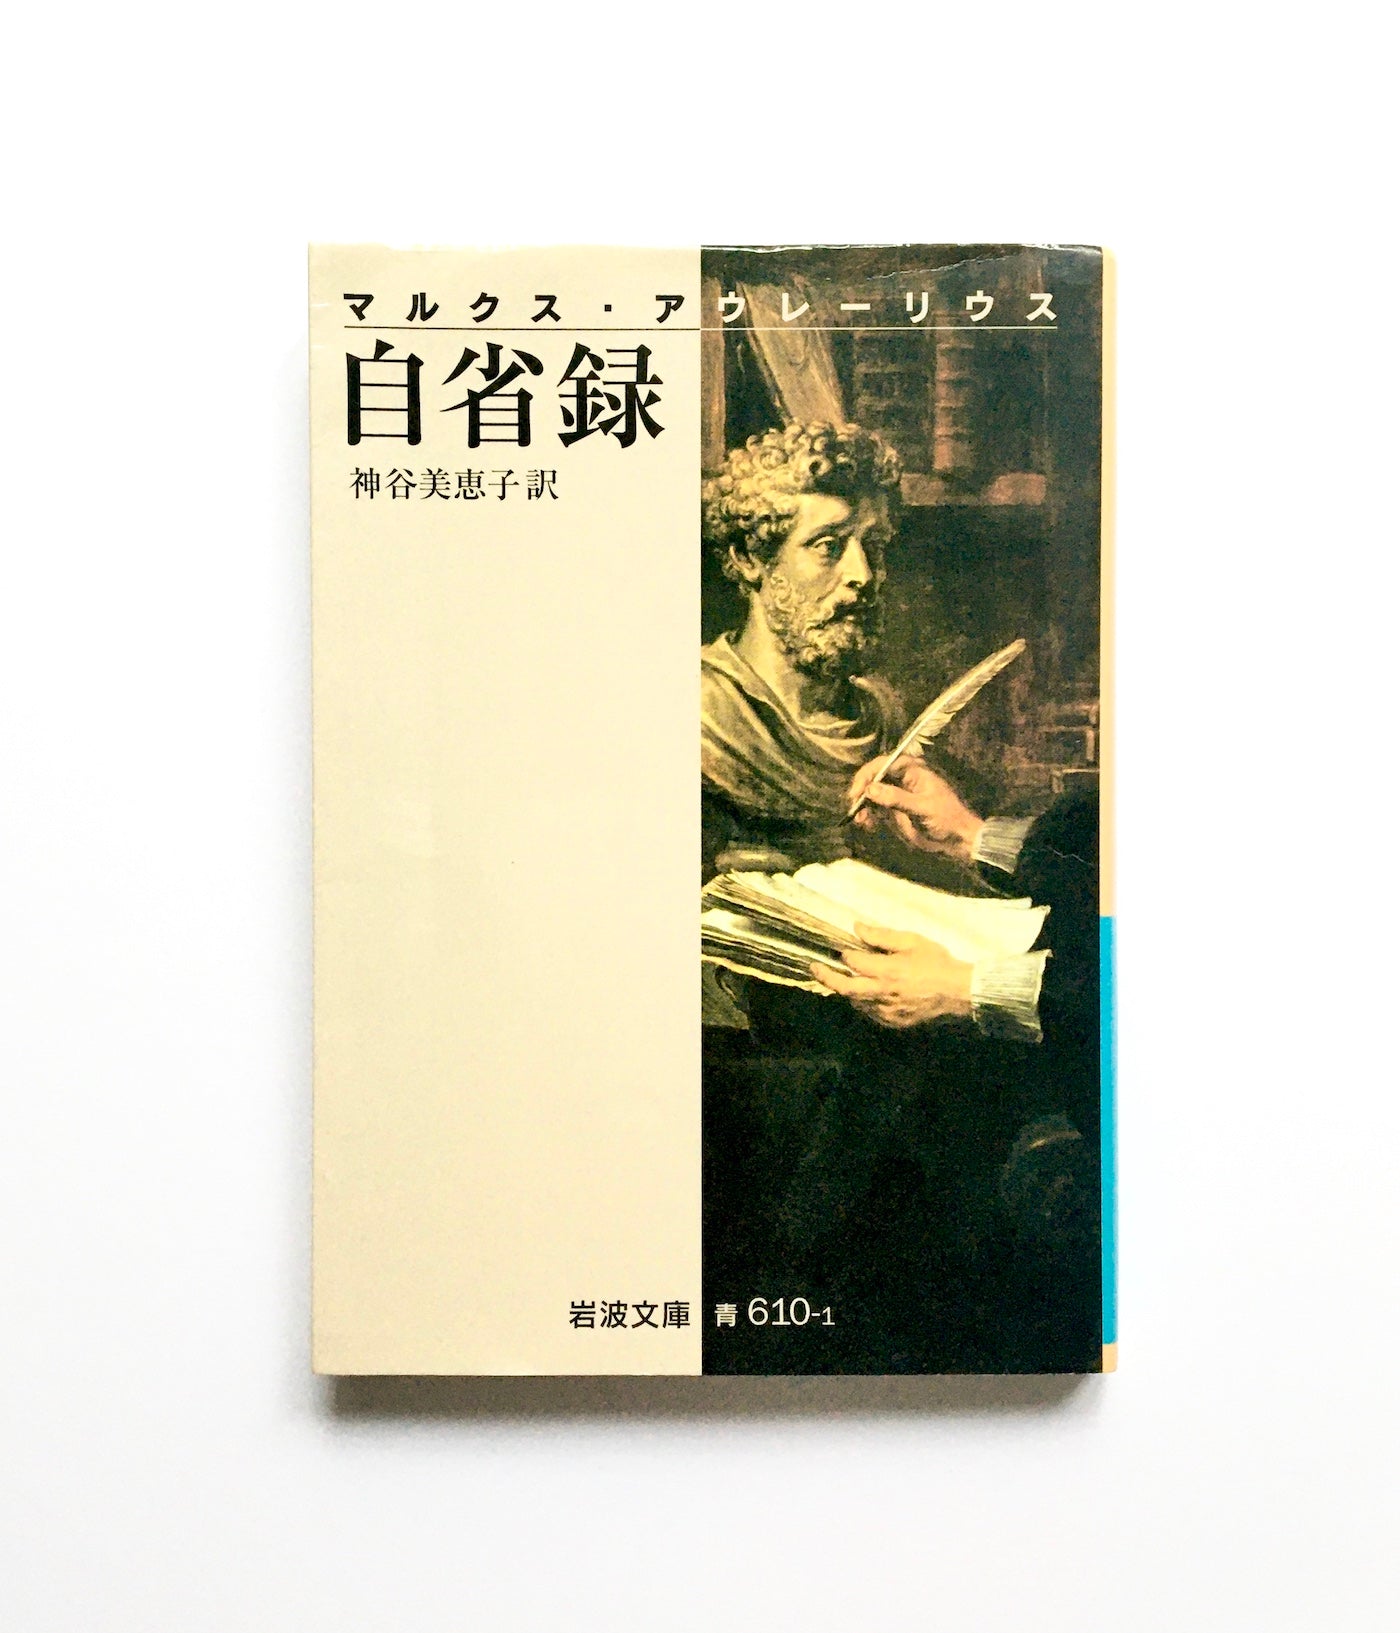 自省録 – Tsubaki japanese bookstore